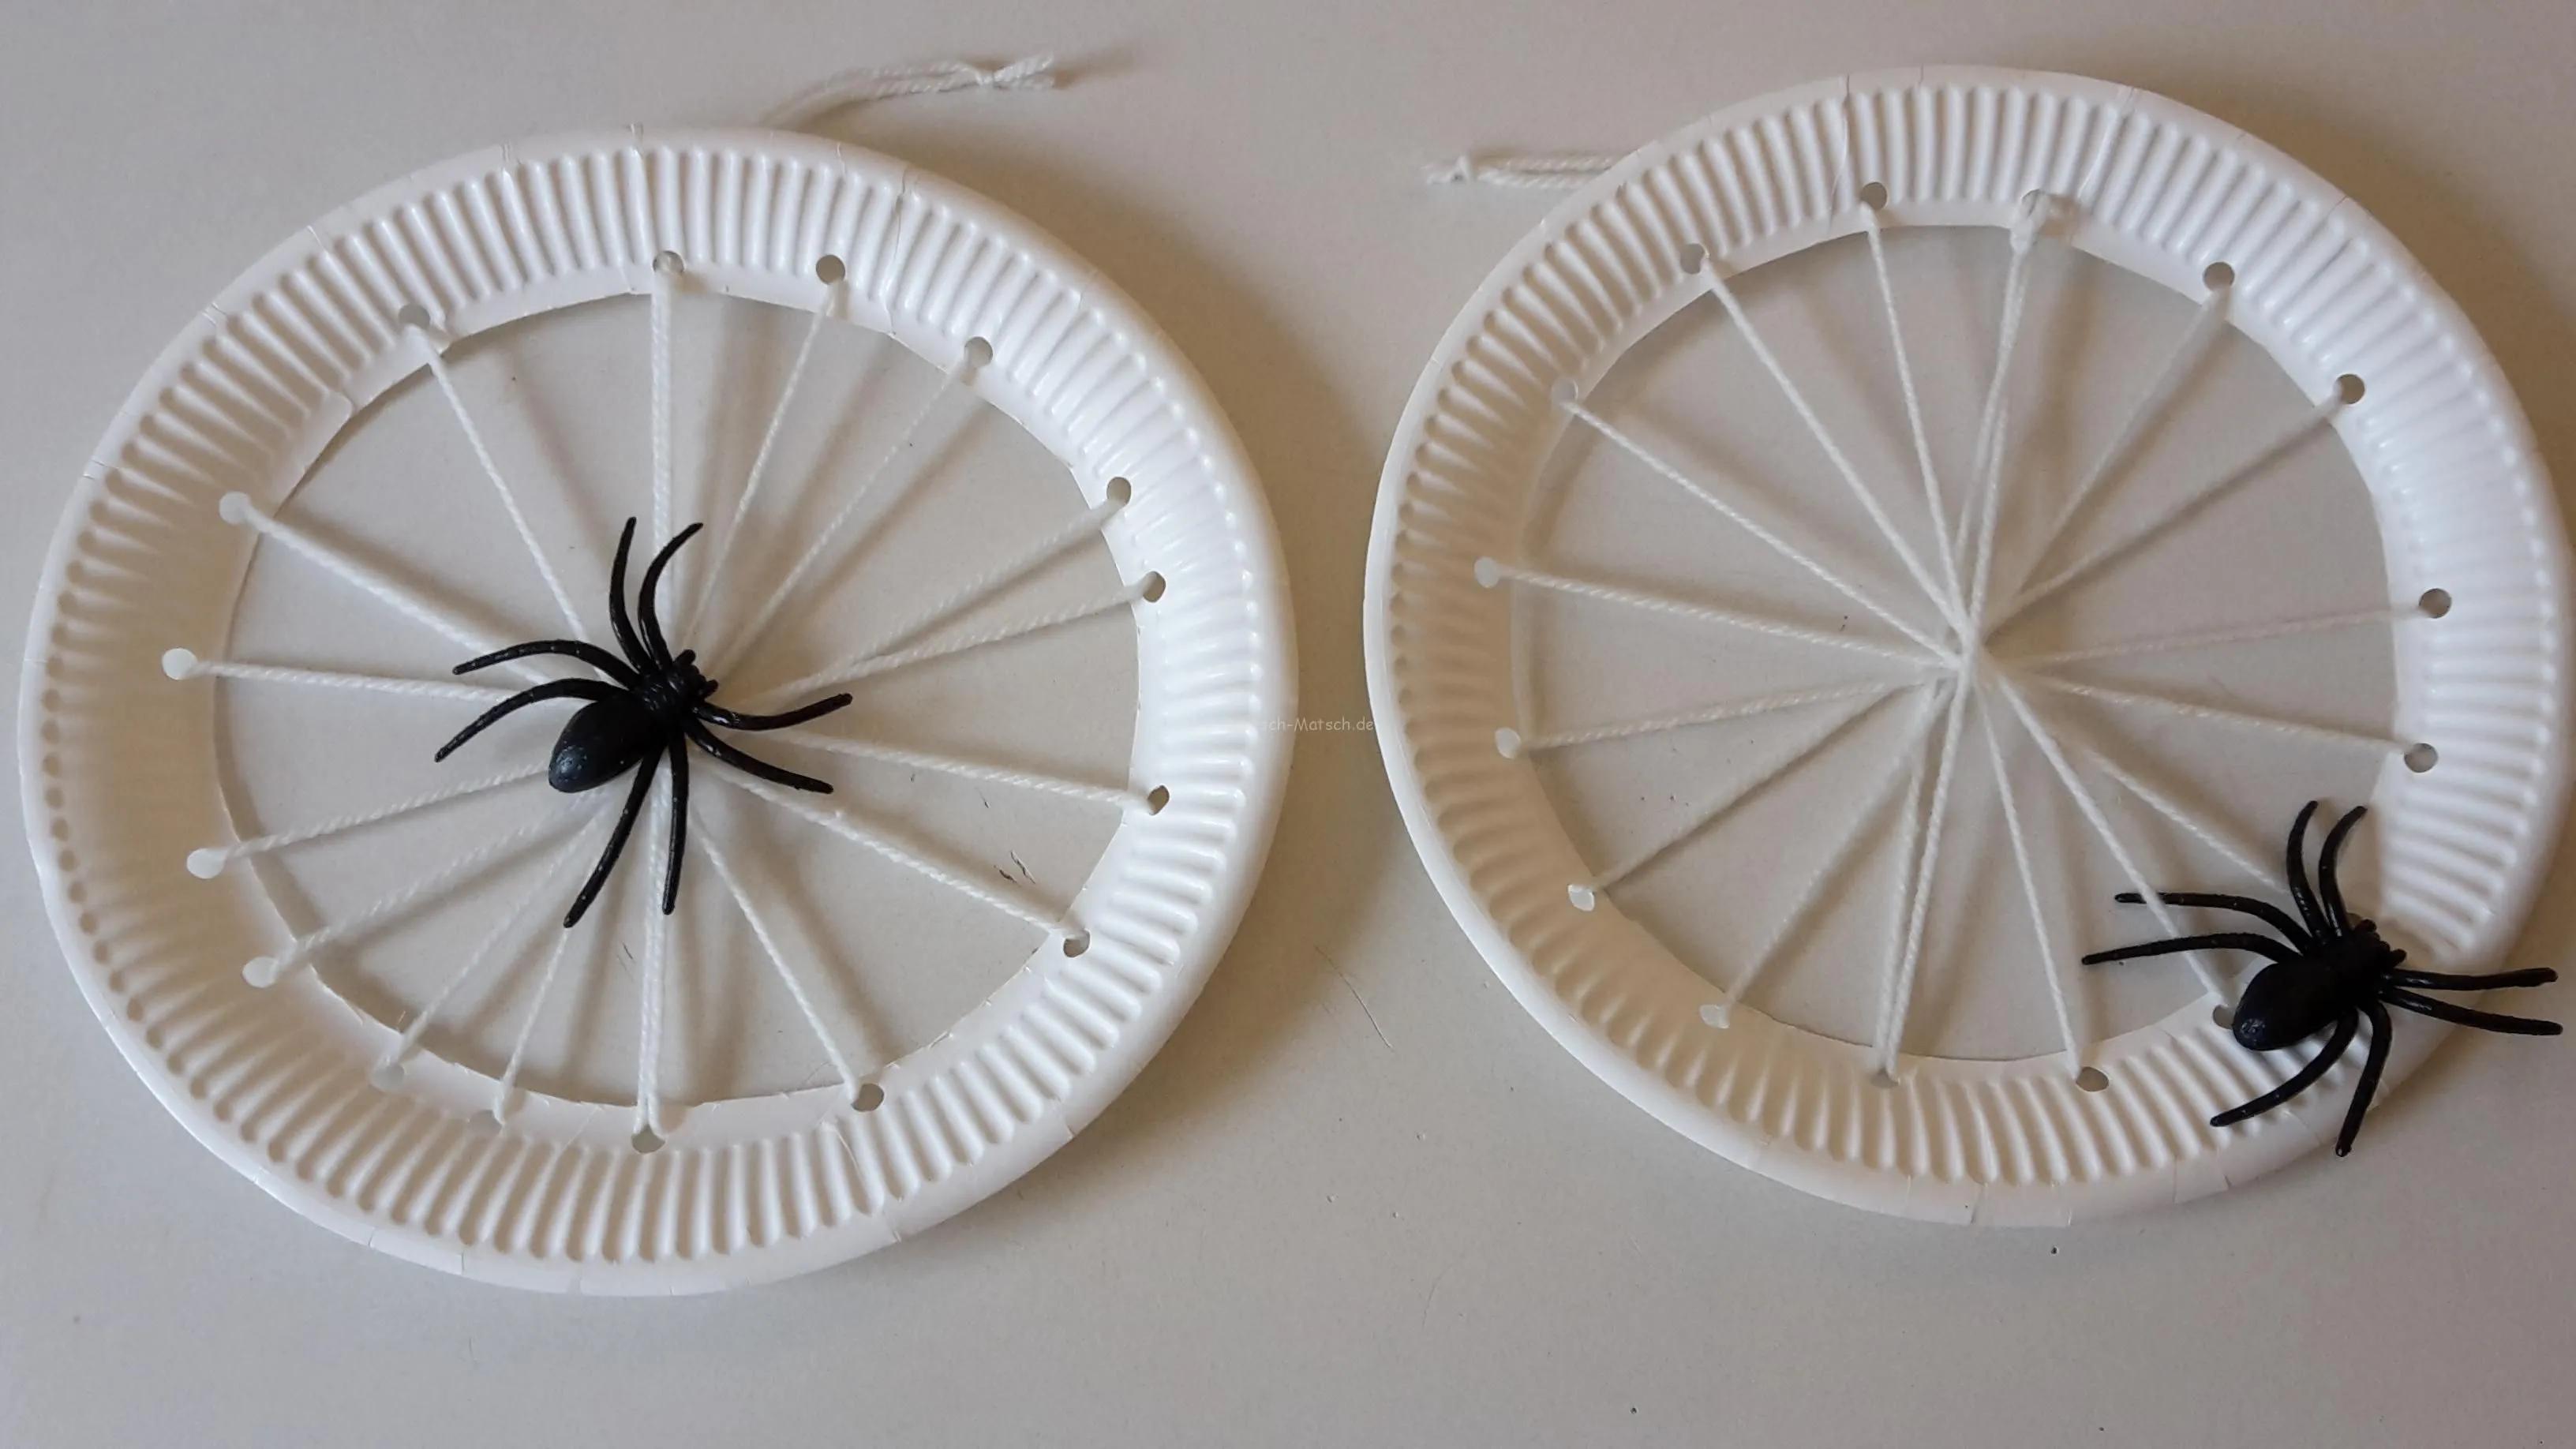 Spinnennetz aus Papptellern - DIY | Der Familienblog für kreative ...